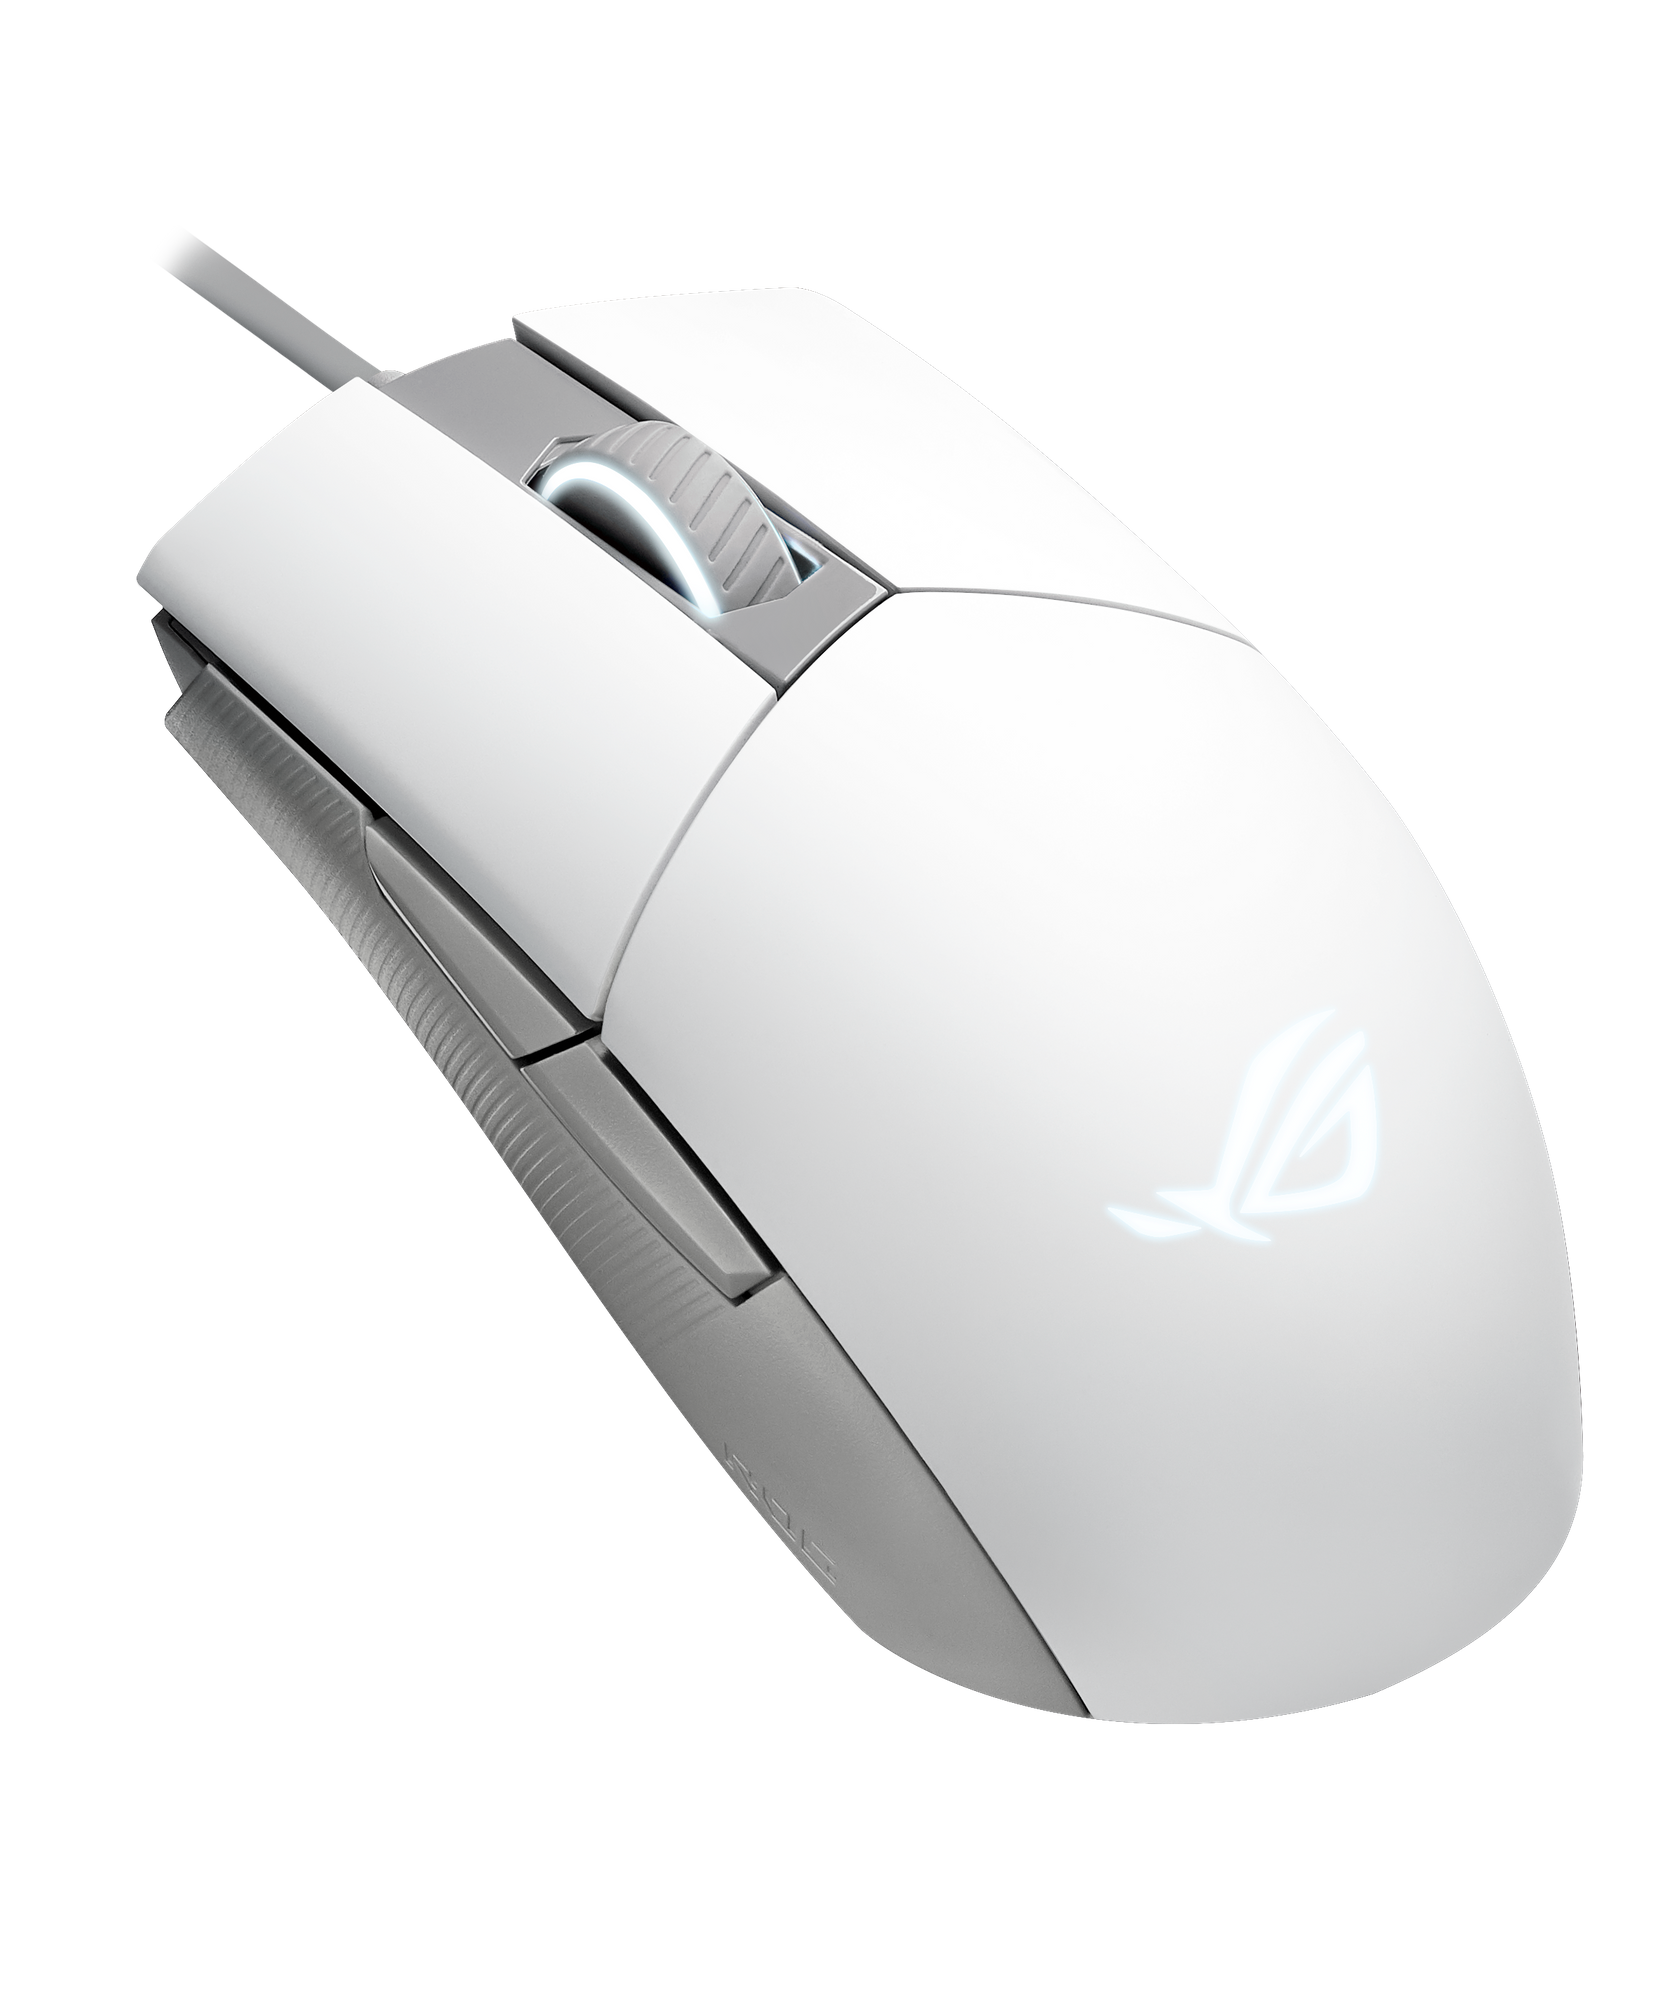 ASUS ROG STRIX Impact II Moonlight White ergonomic gaming mouse thumbnail 1